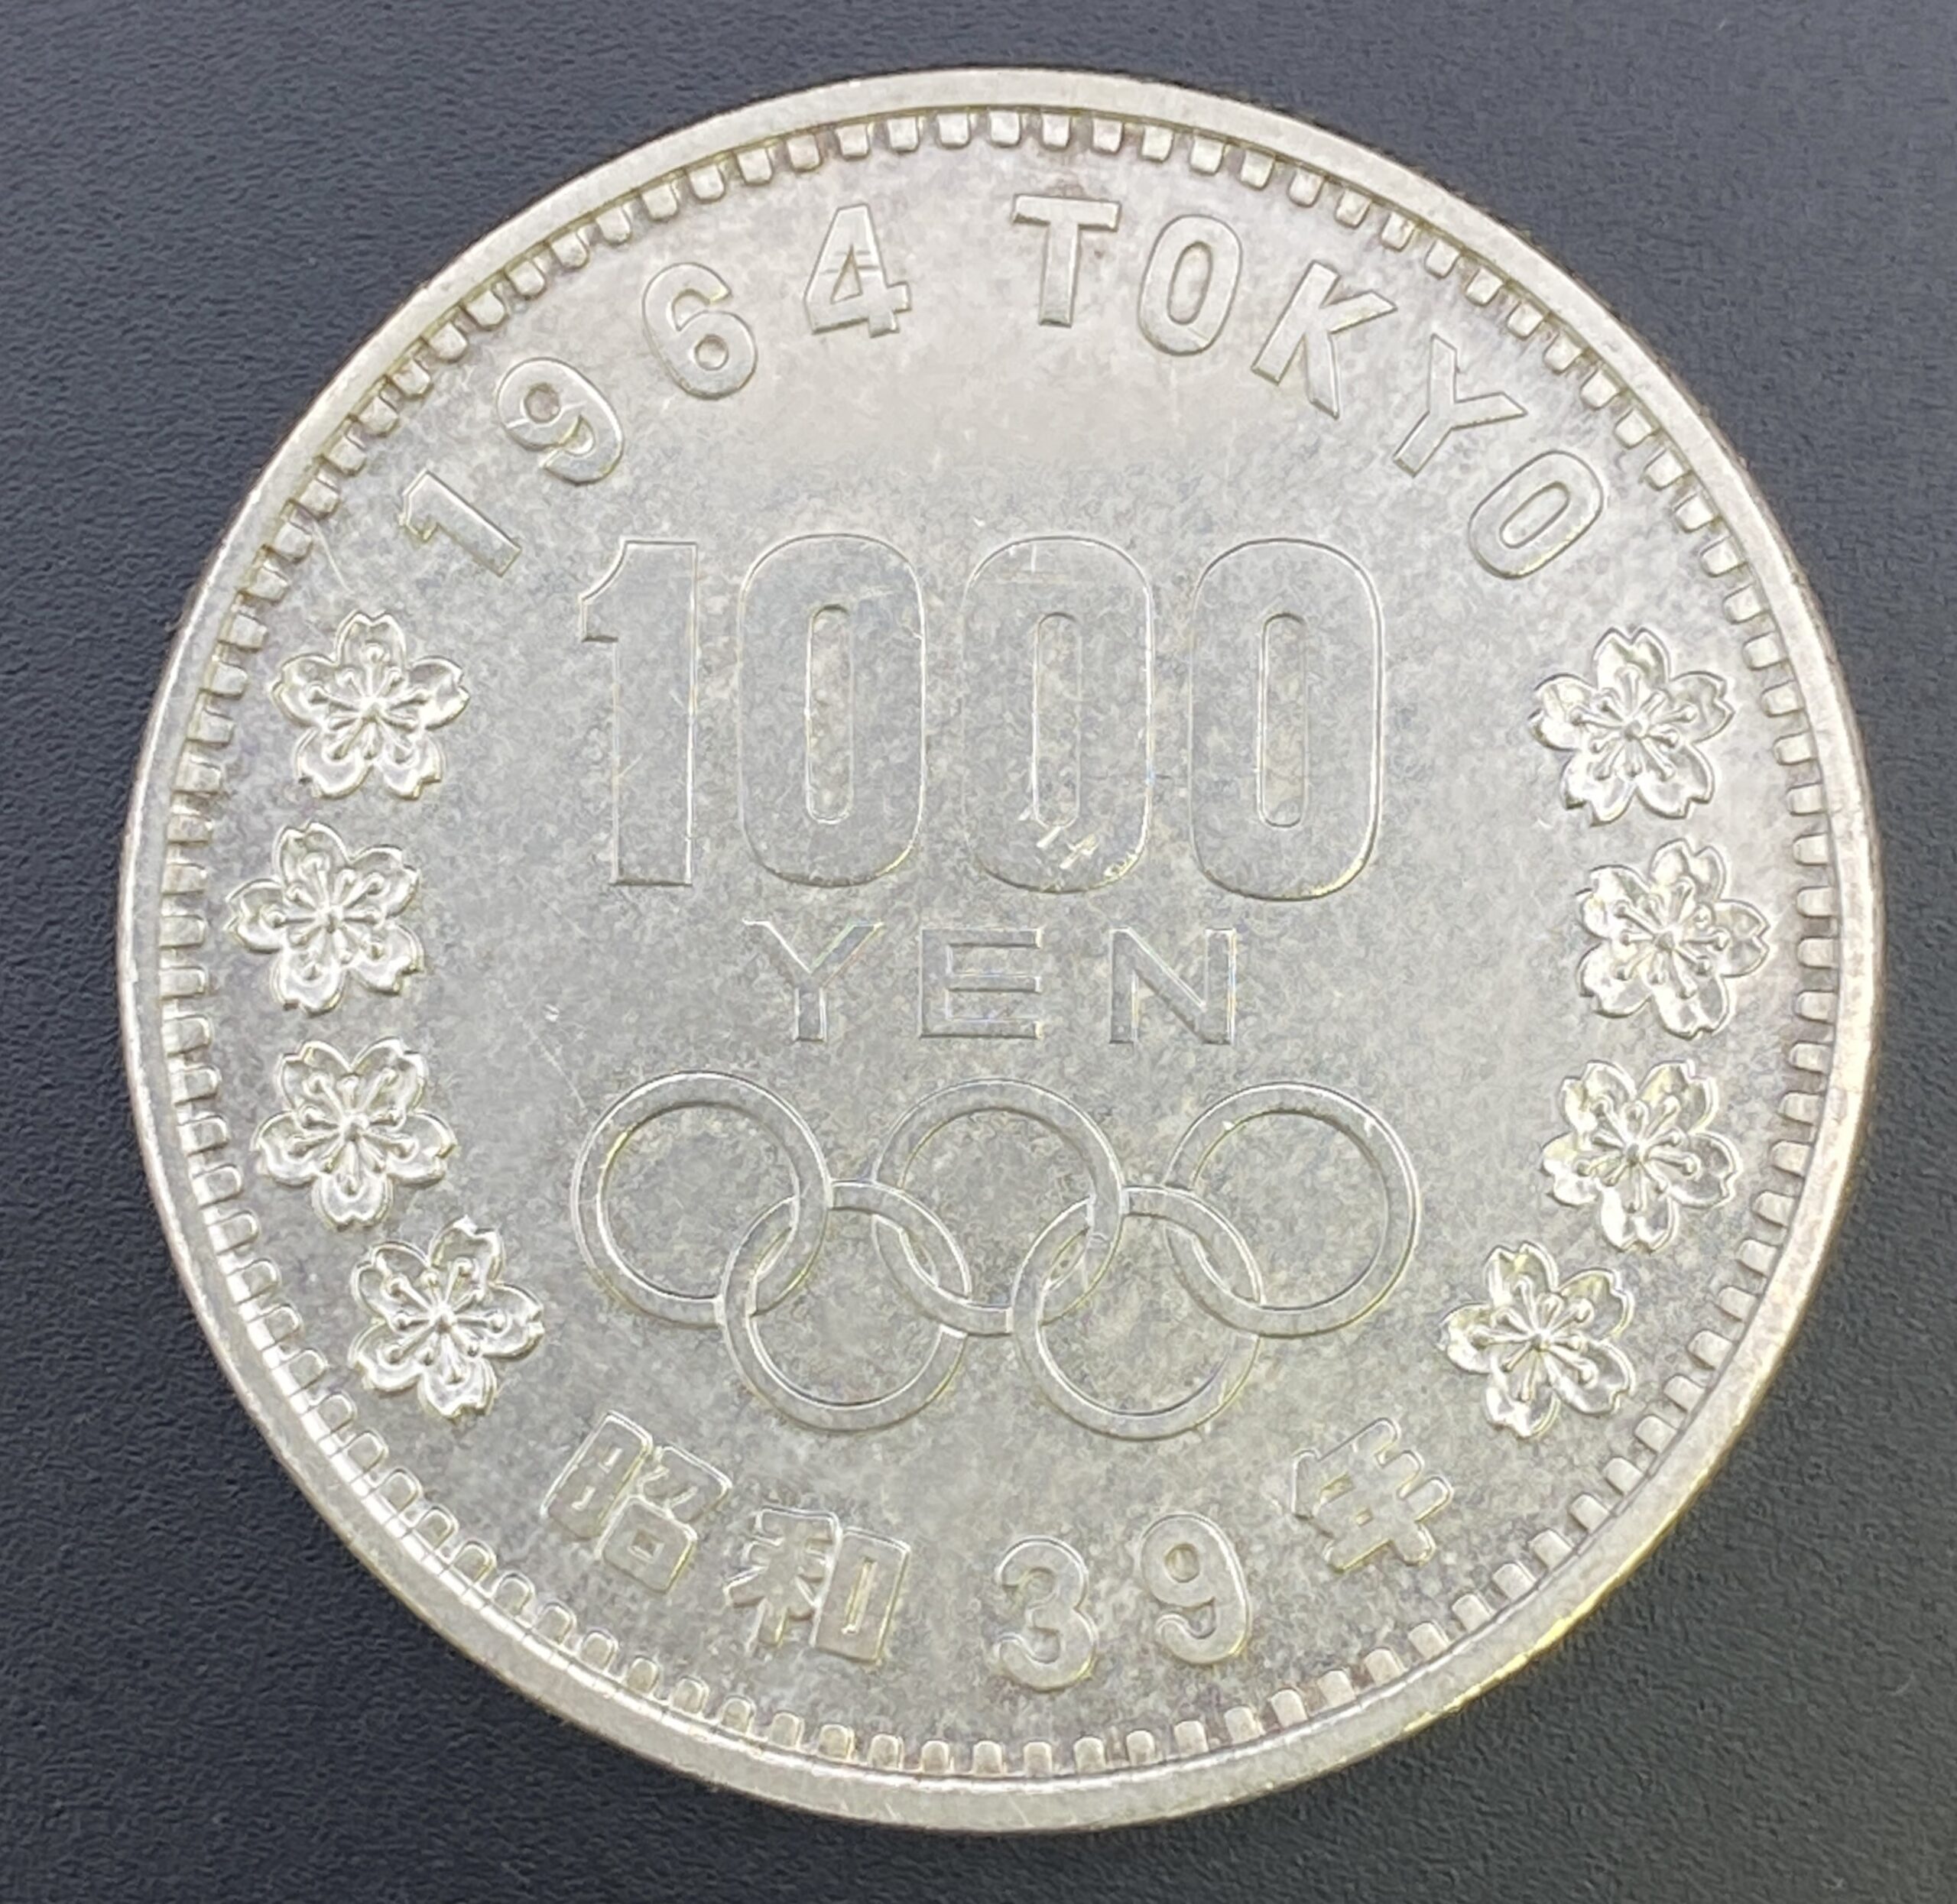 東京オリンピック 1000円銀貨を買取致しました